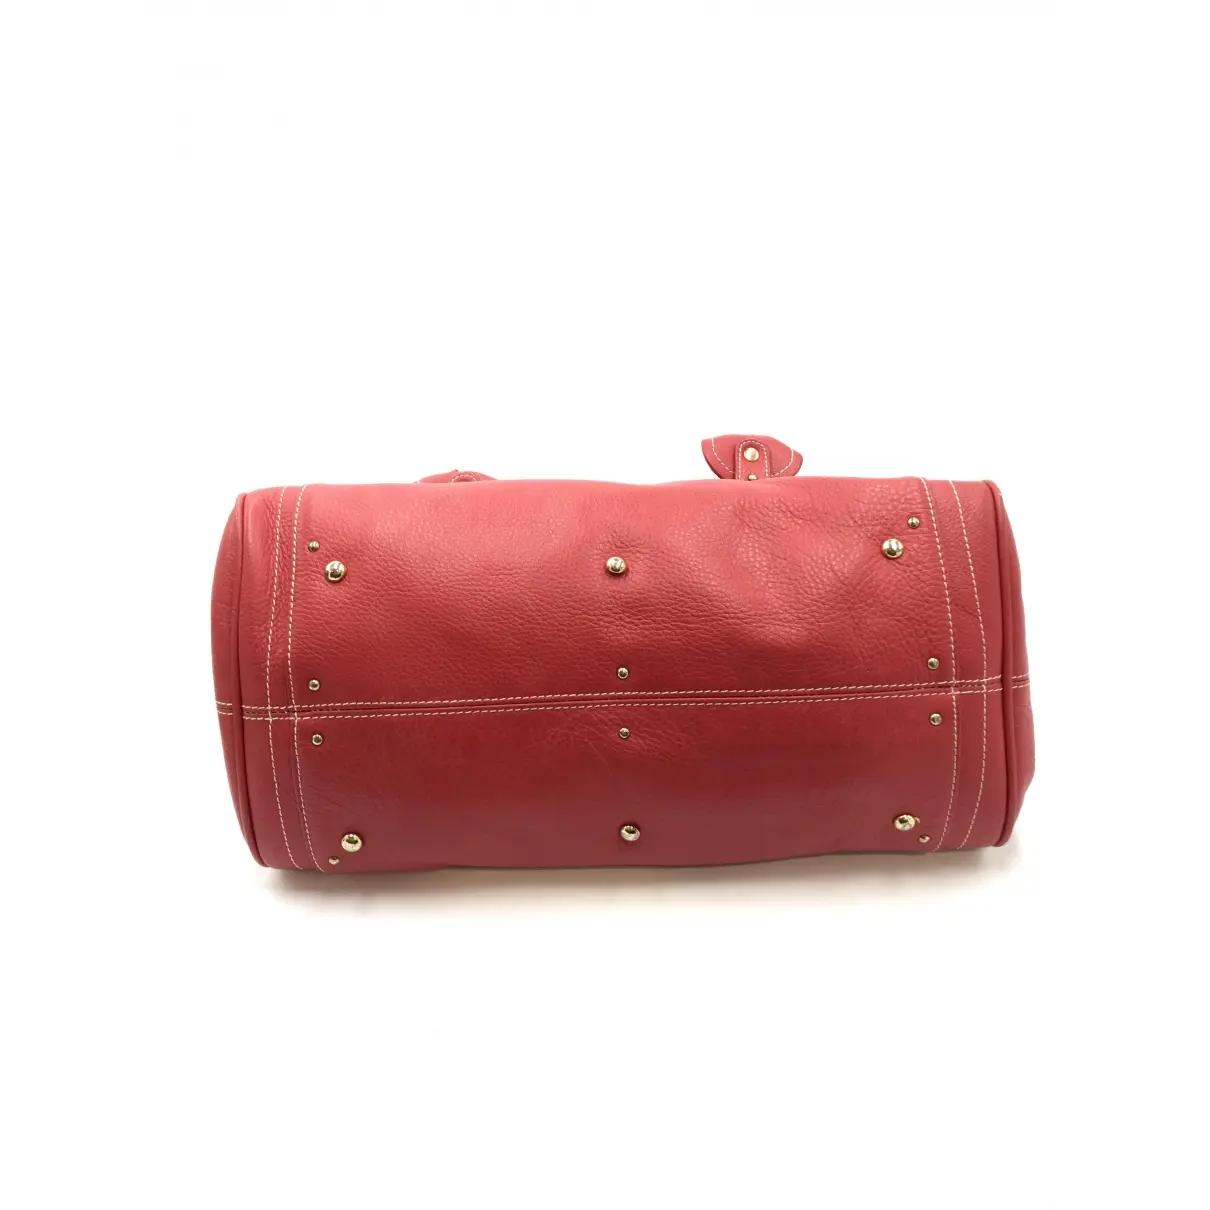 Paddington leather handbag Chloé